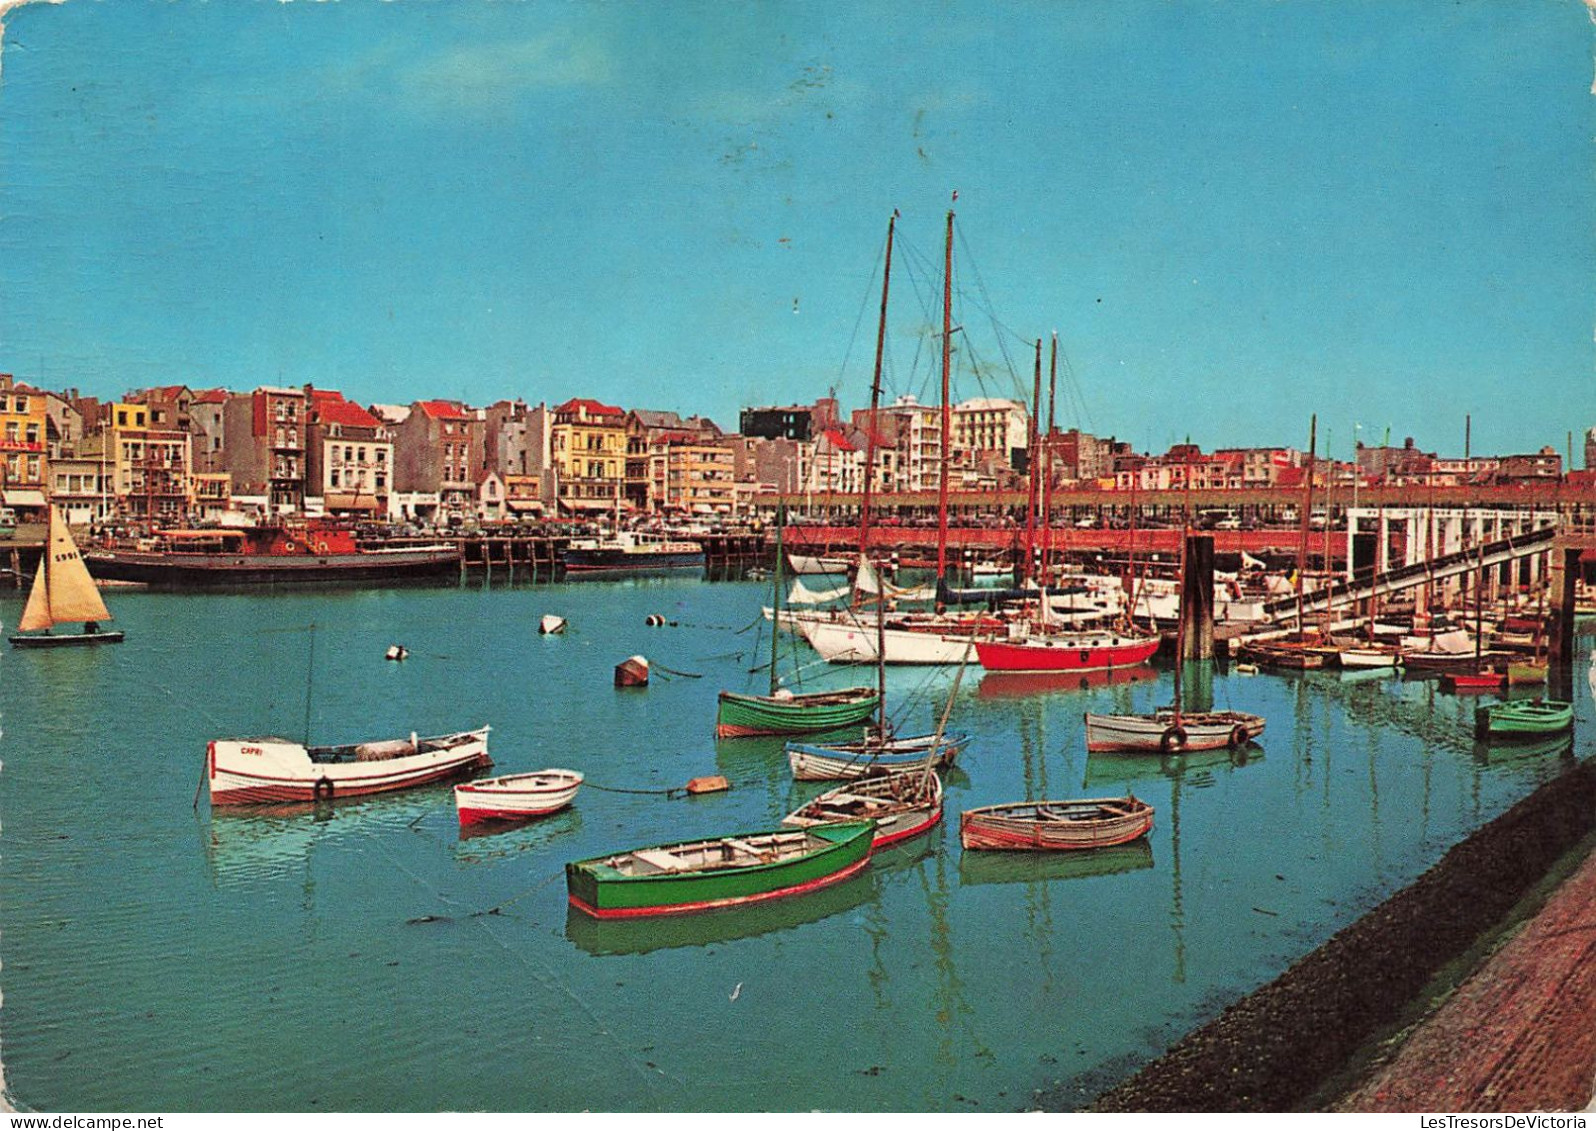 BELGIQUE - Blankenberge - Le Port Et Les Yachts - Carte Postale - Blankenberge